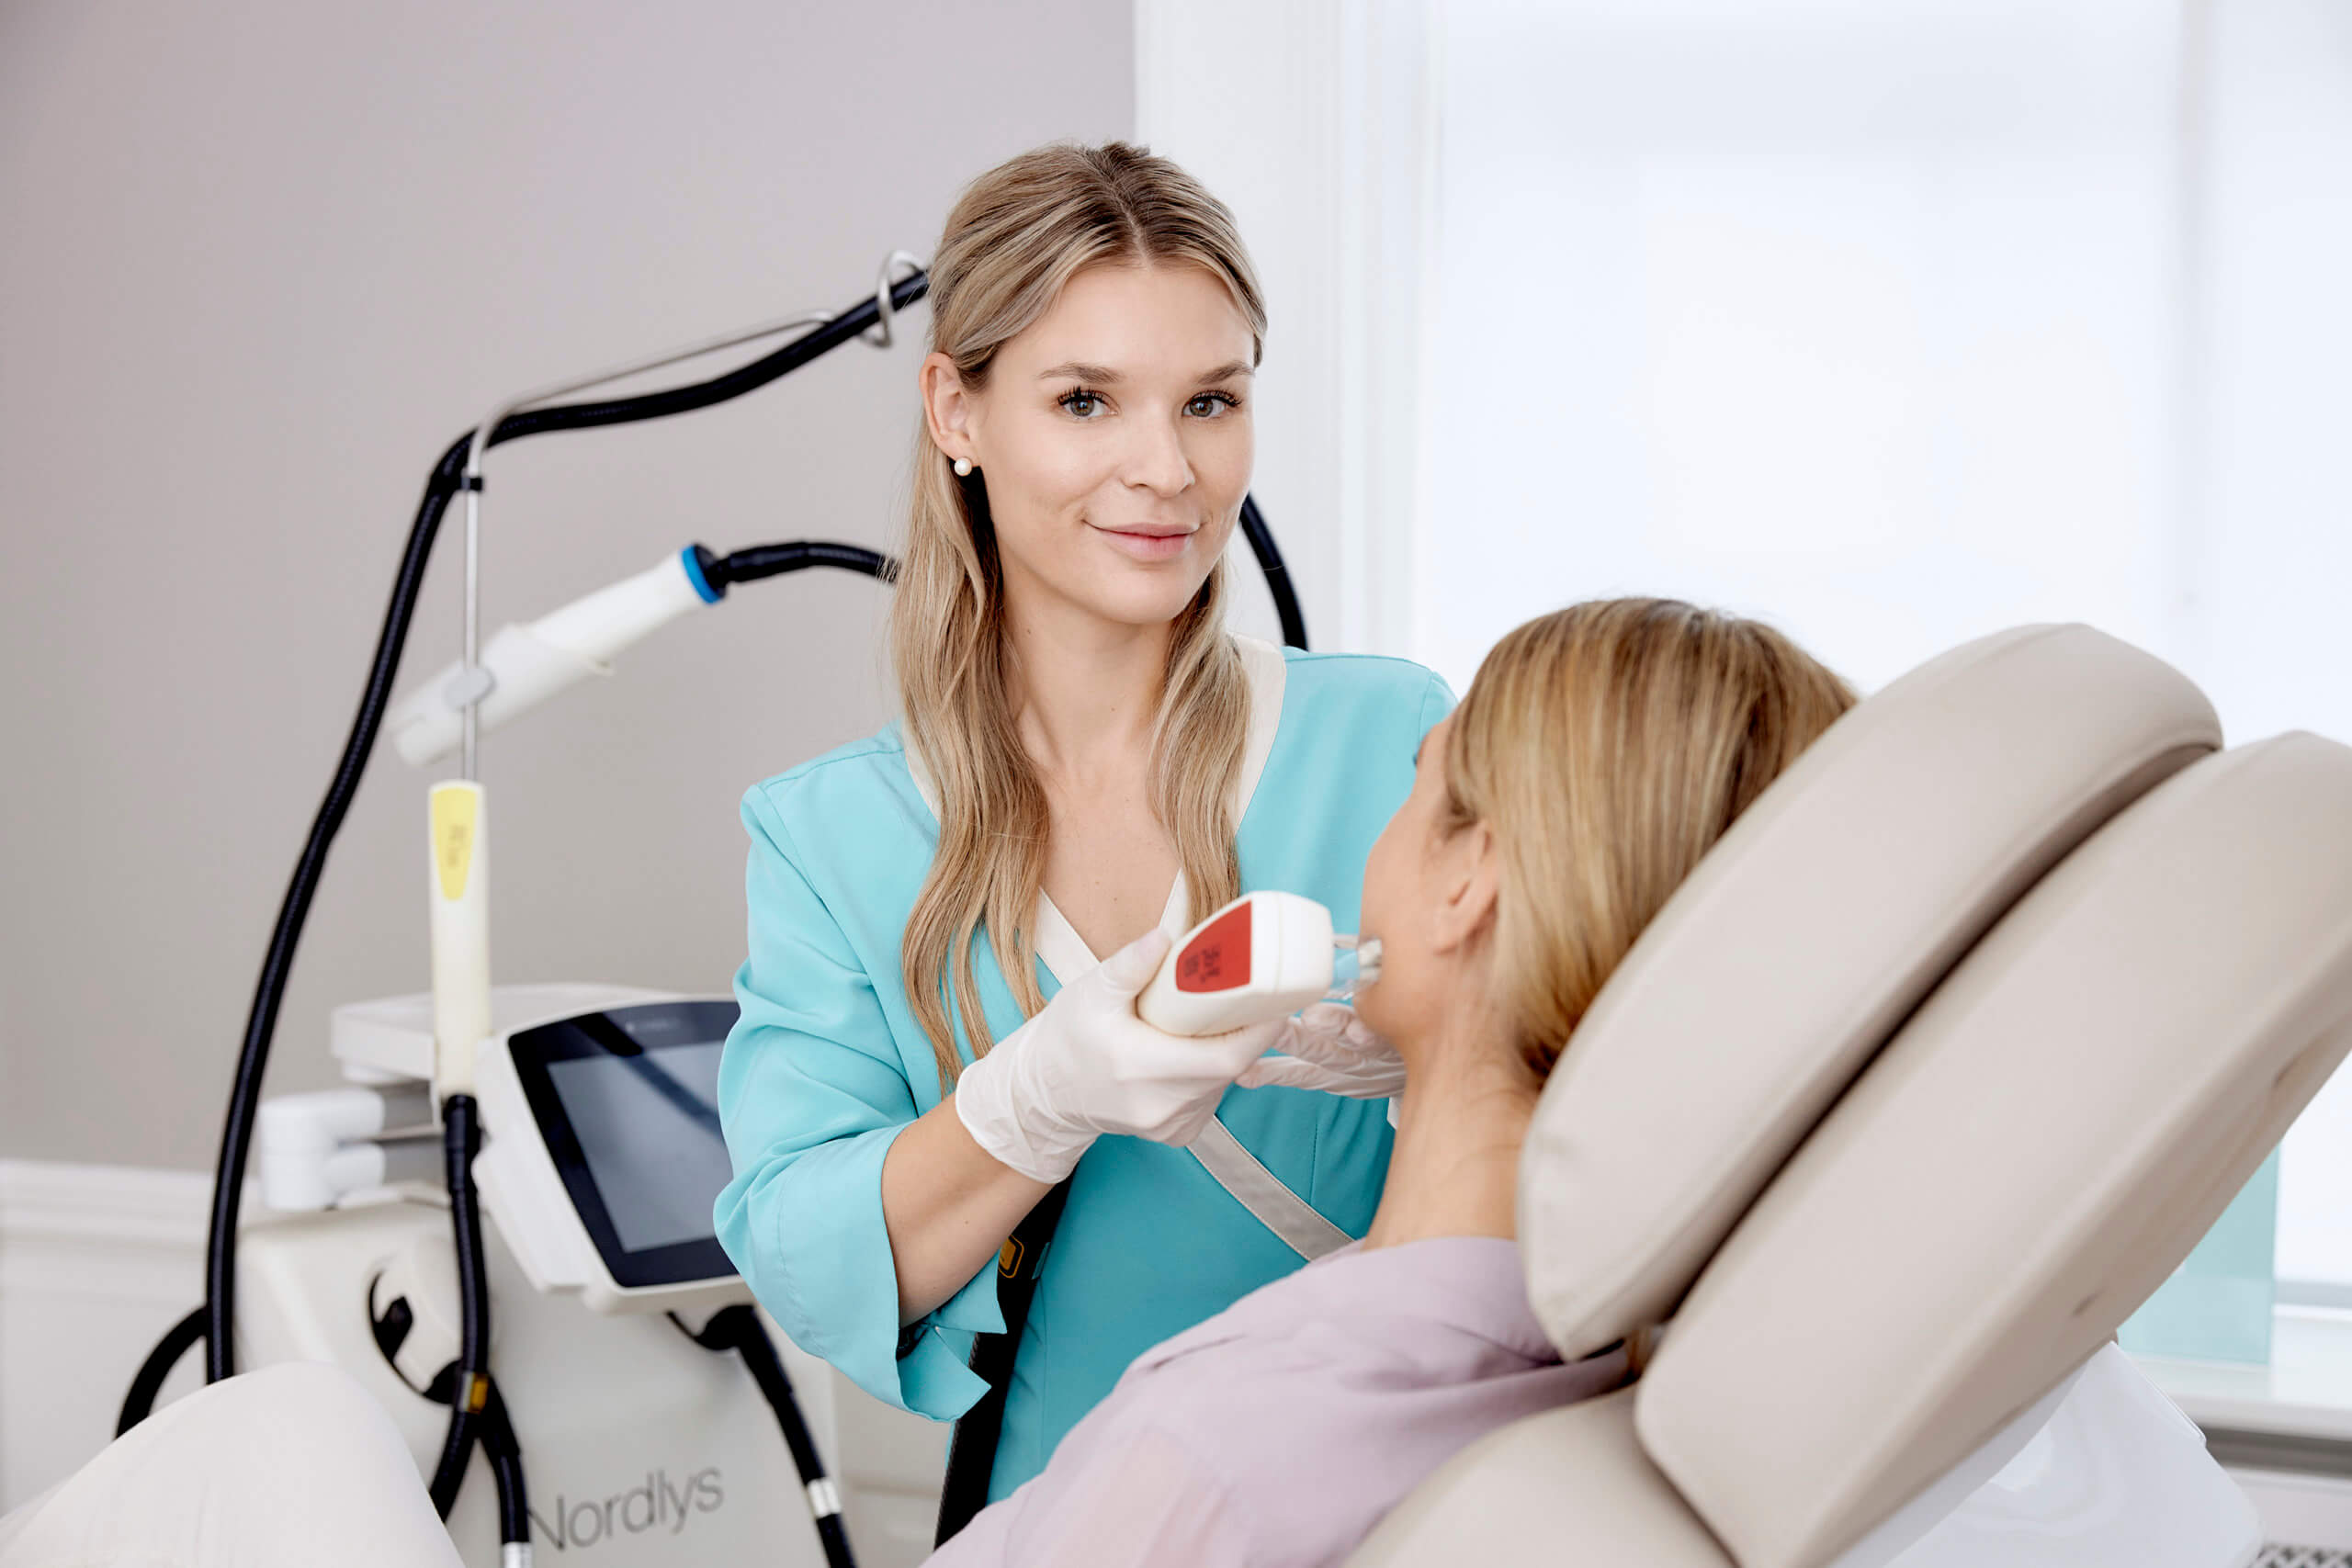 Kosmetisk sygeplejerske Nina: Sådan kan laser hjælpe mod rødme og rosacea